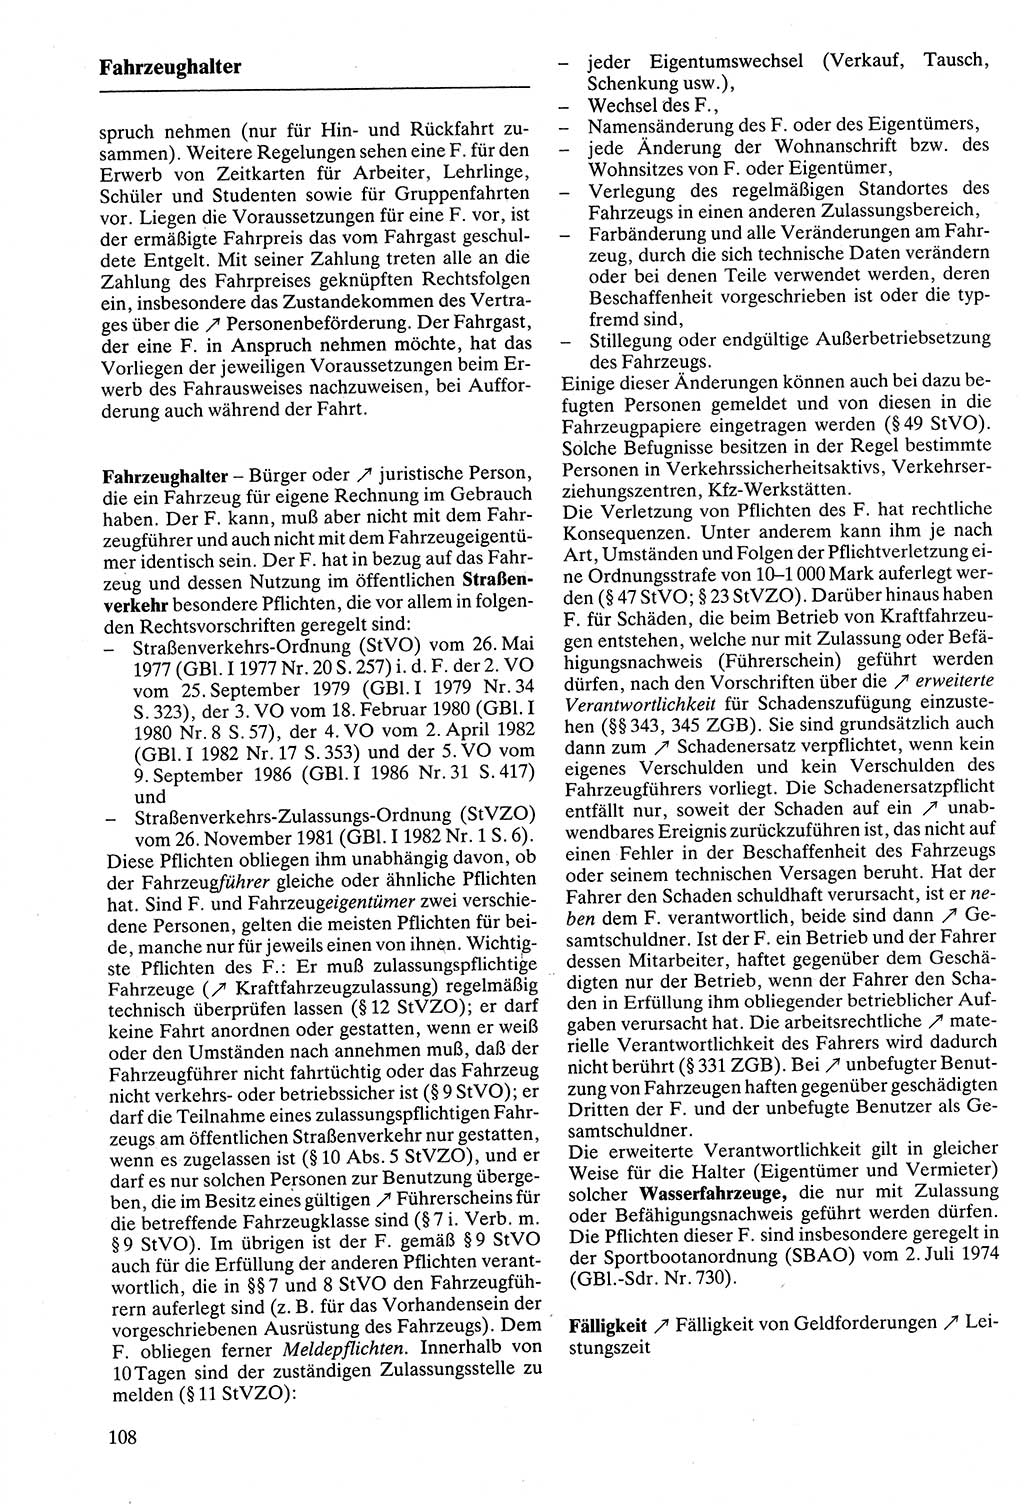 Rechtslexikon [Deutsche Demokratische Republik (DDR)] 1988, Seite 108 (Rechtslex. DDR 1988, S. 108)